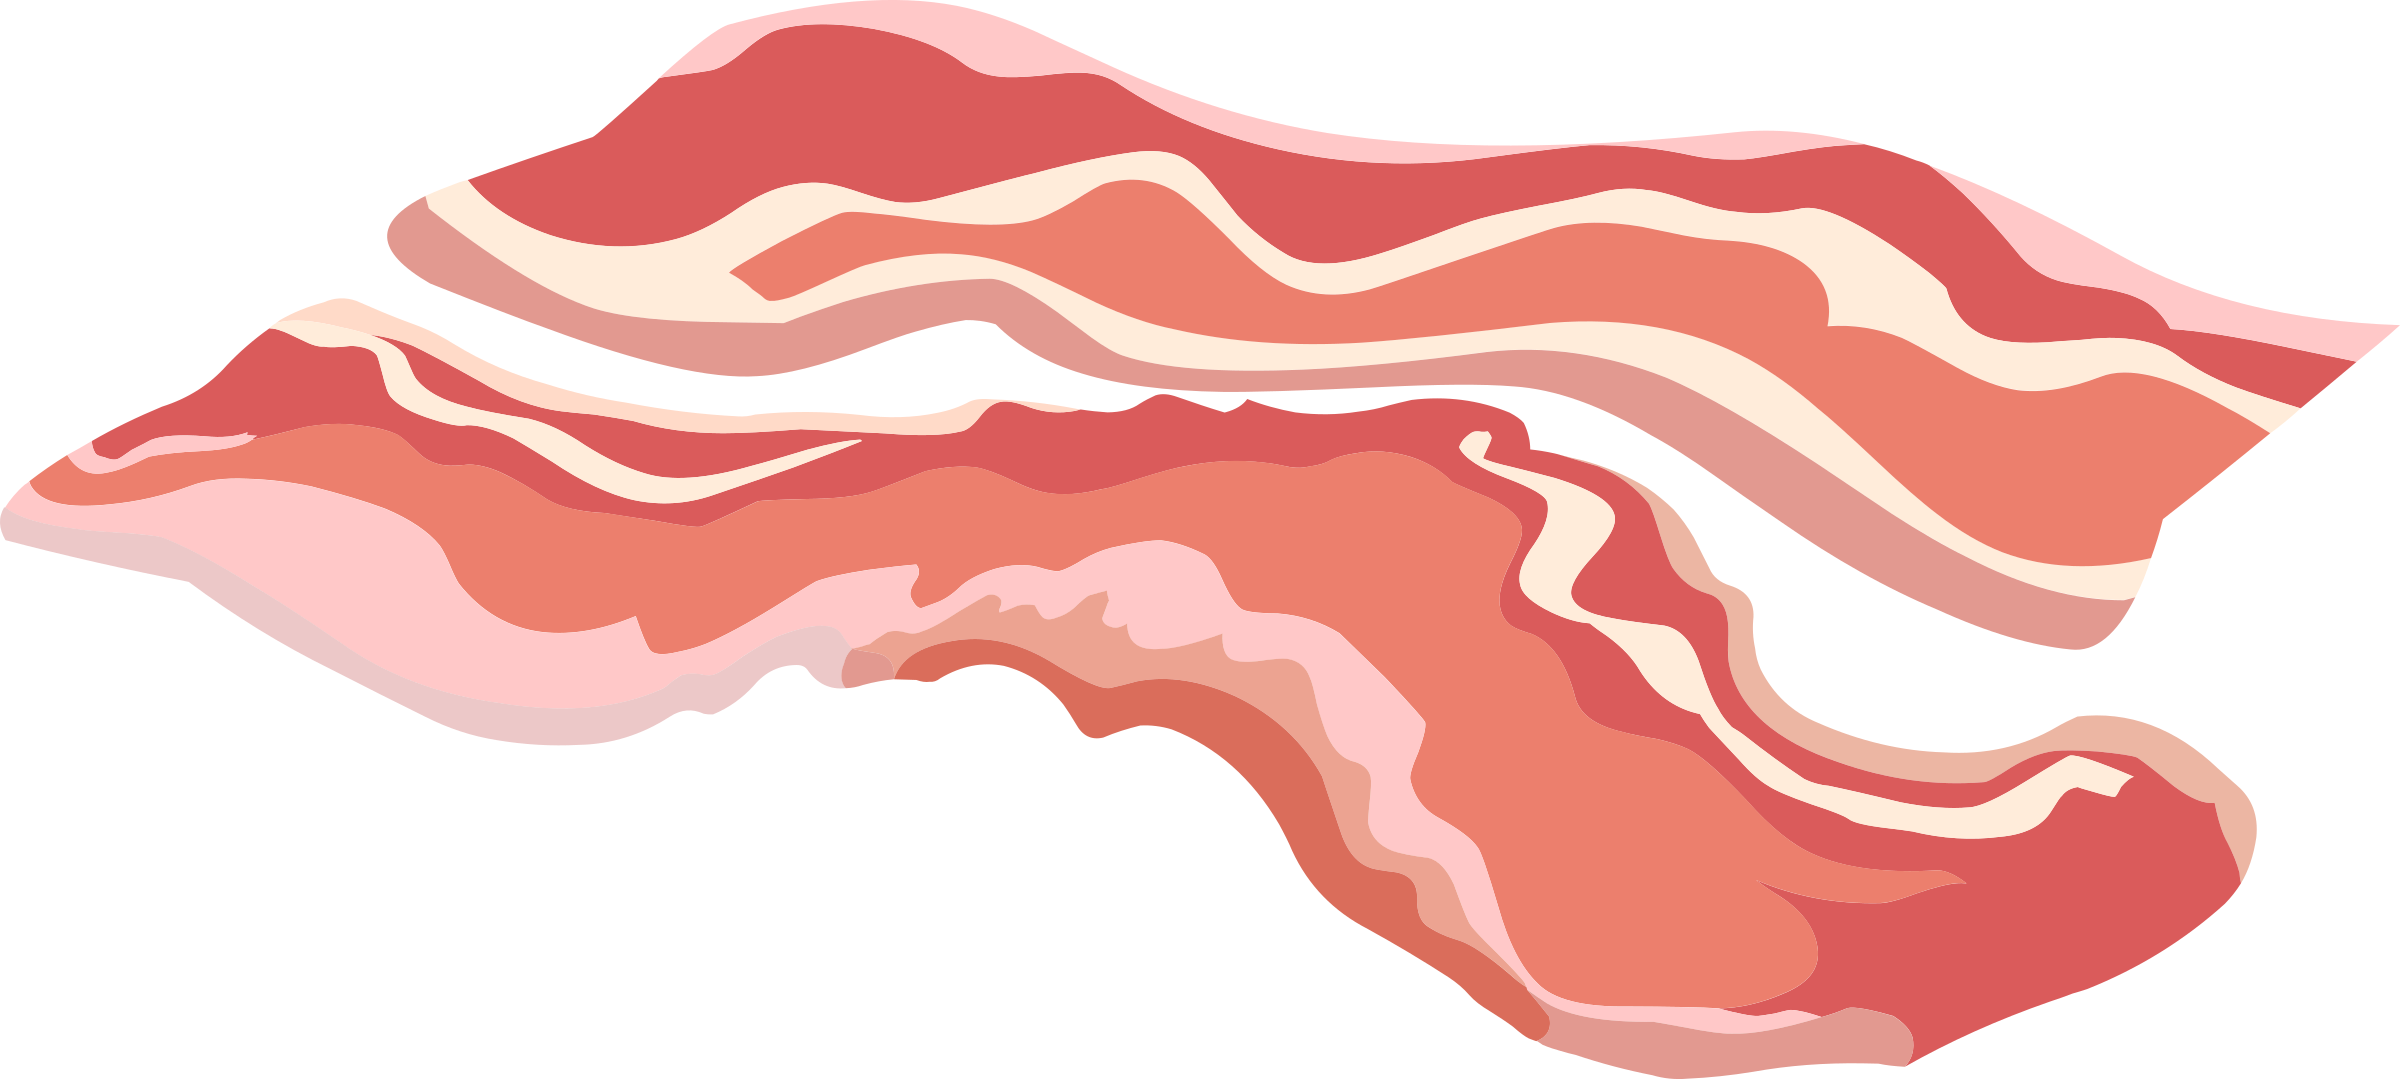 Cloe bacon